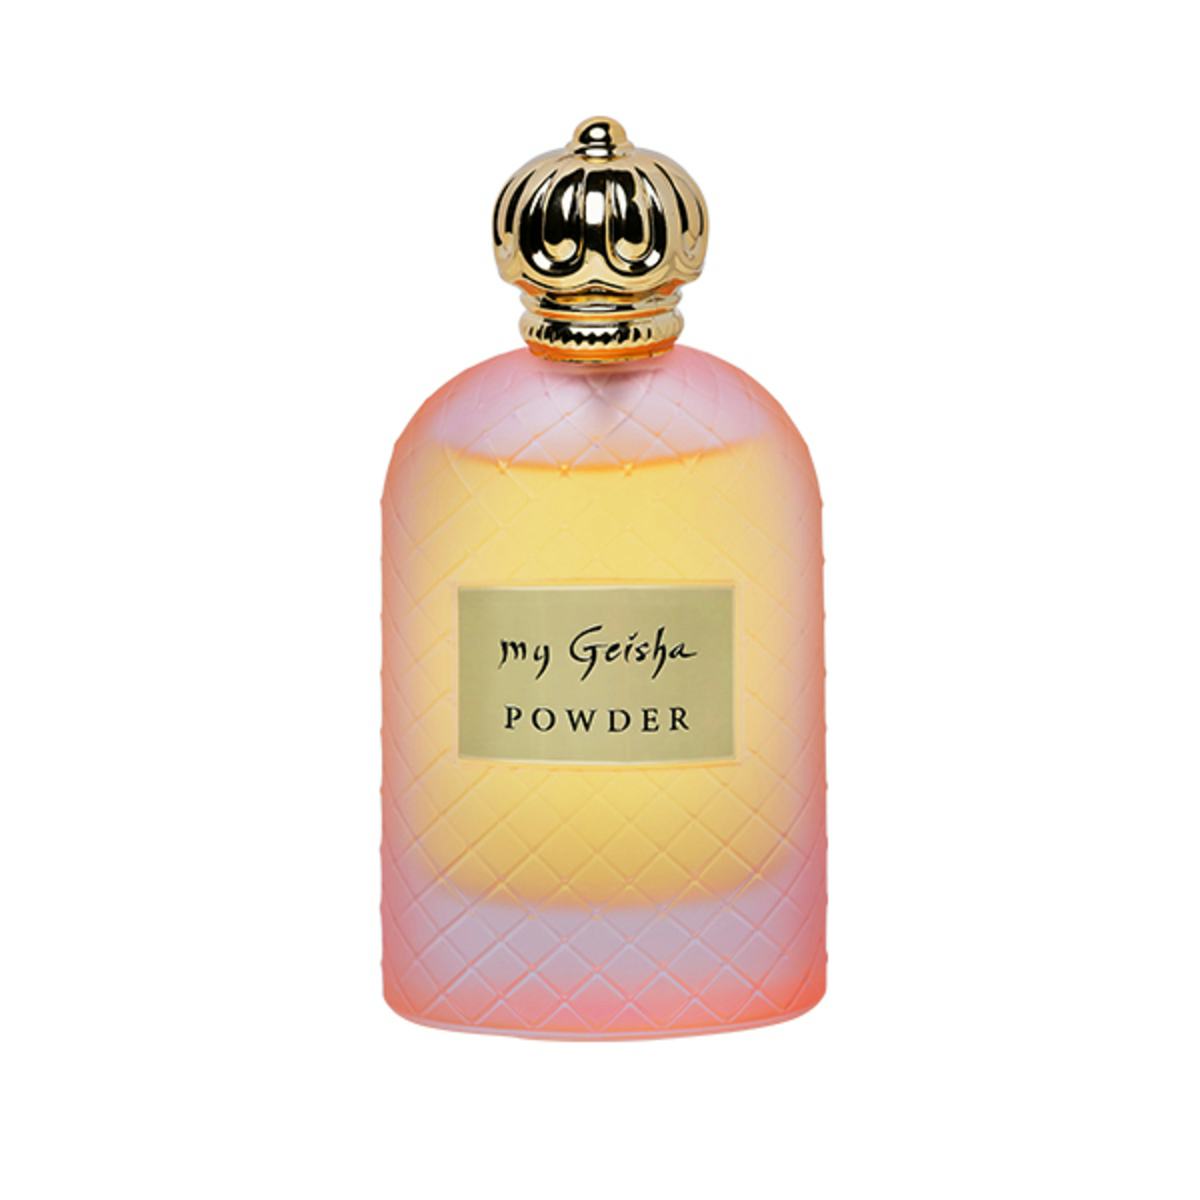 Extrait de parfum "Powder" 100 ml, produit artisanal en vente directe en Suisse